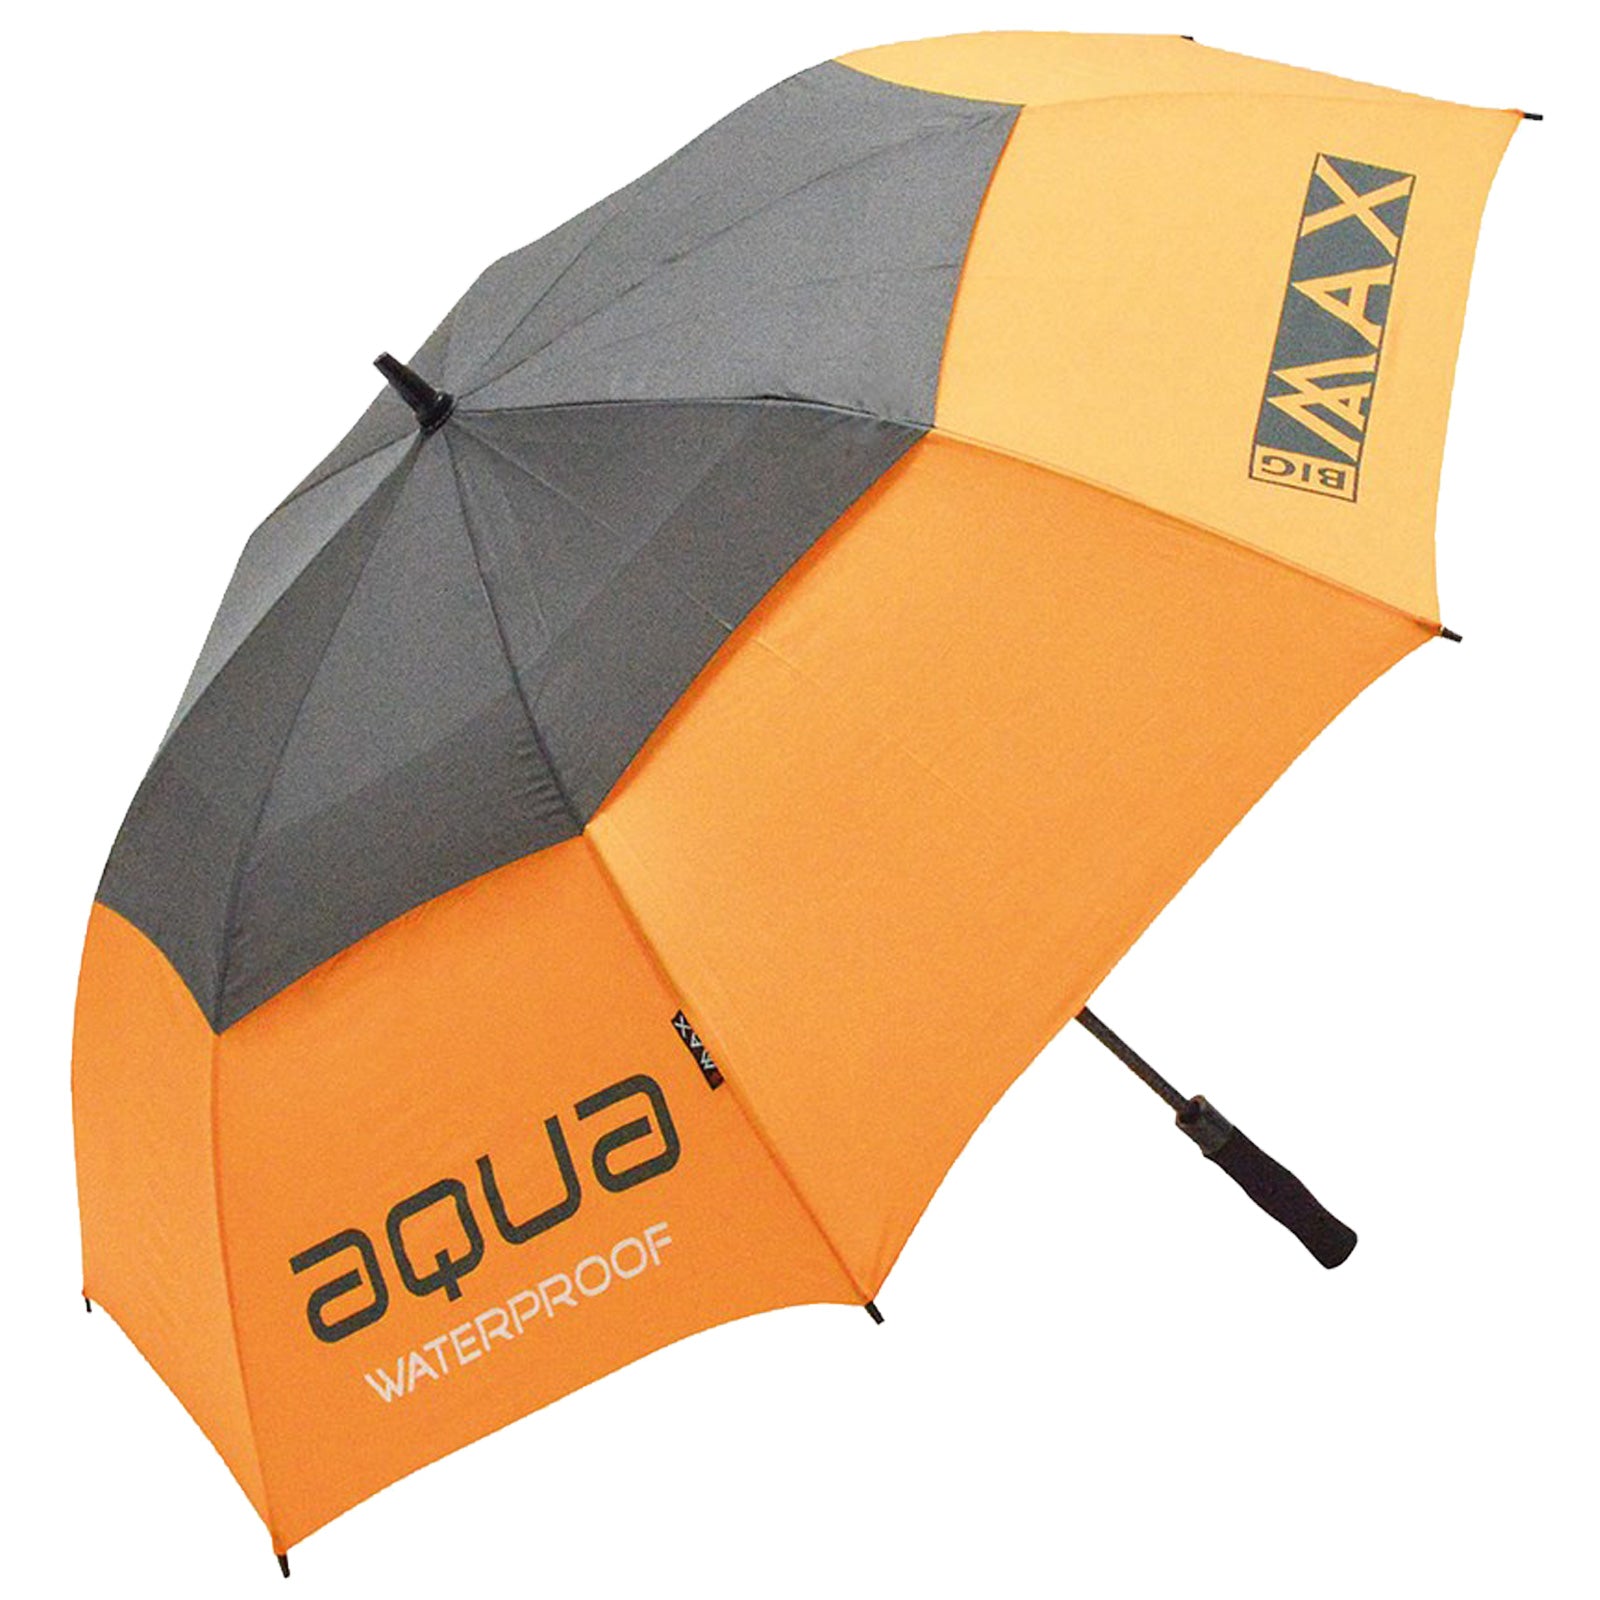 Big Max Aqua Auto Open 60" Double Canopy Umbrella